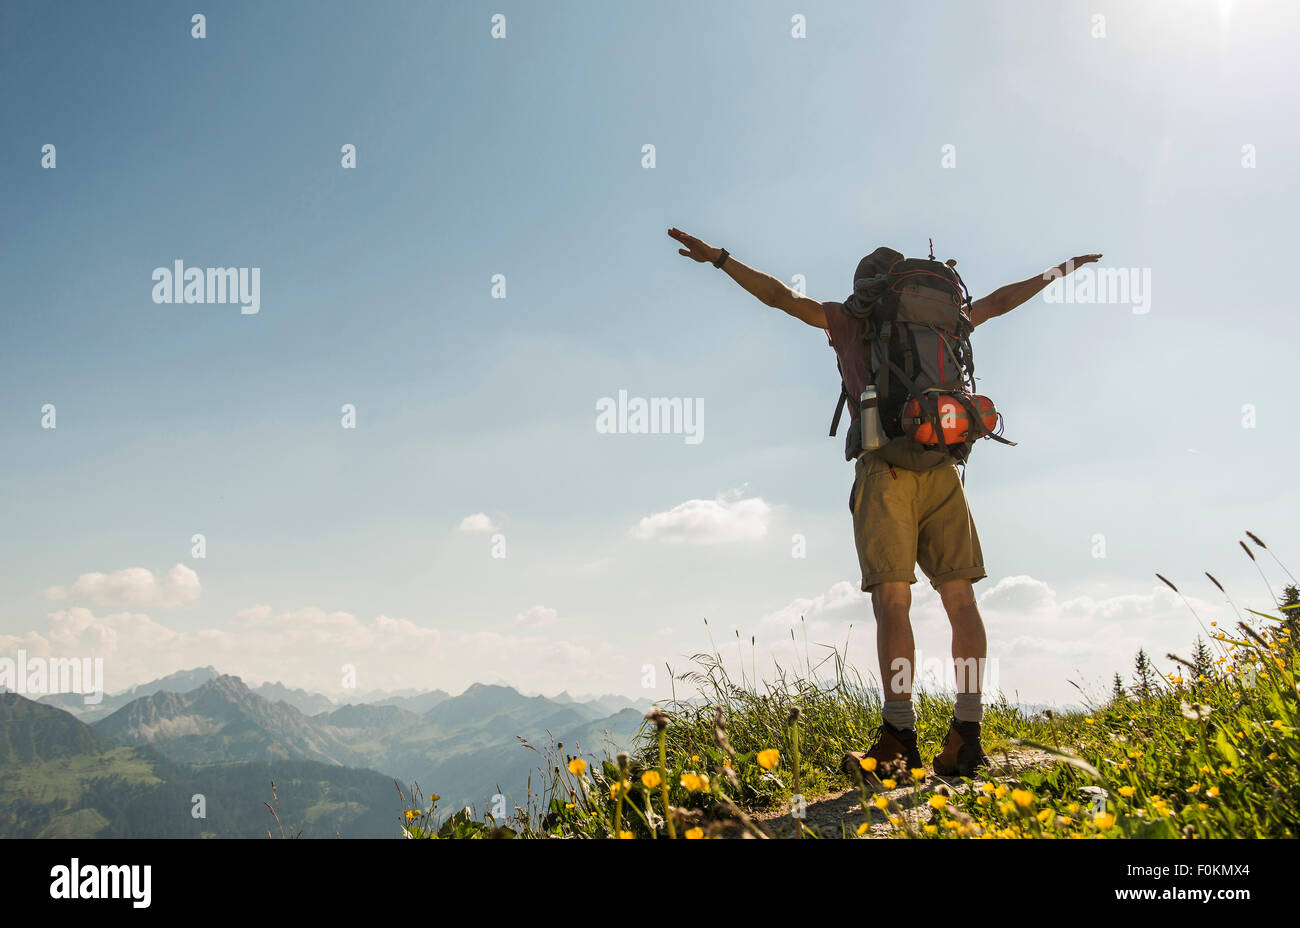 Autriche, Tyrol, Tannheimer Tal, jeune homme debout sur la piste de montagne with arms outstretched Banque D'Images